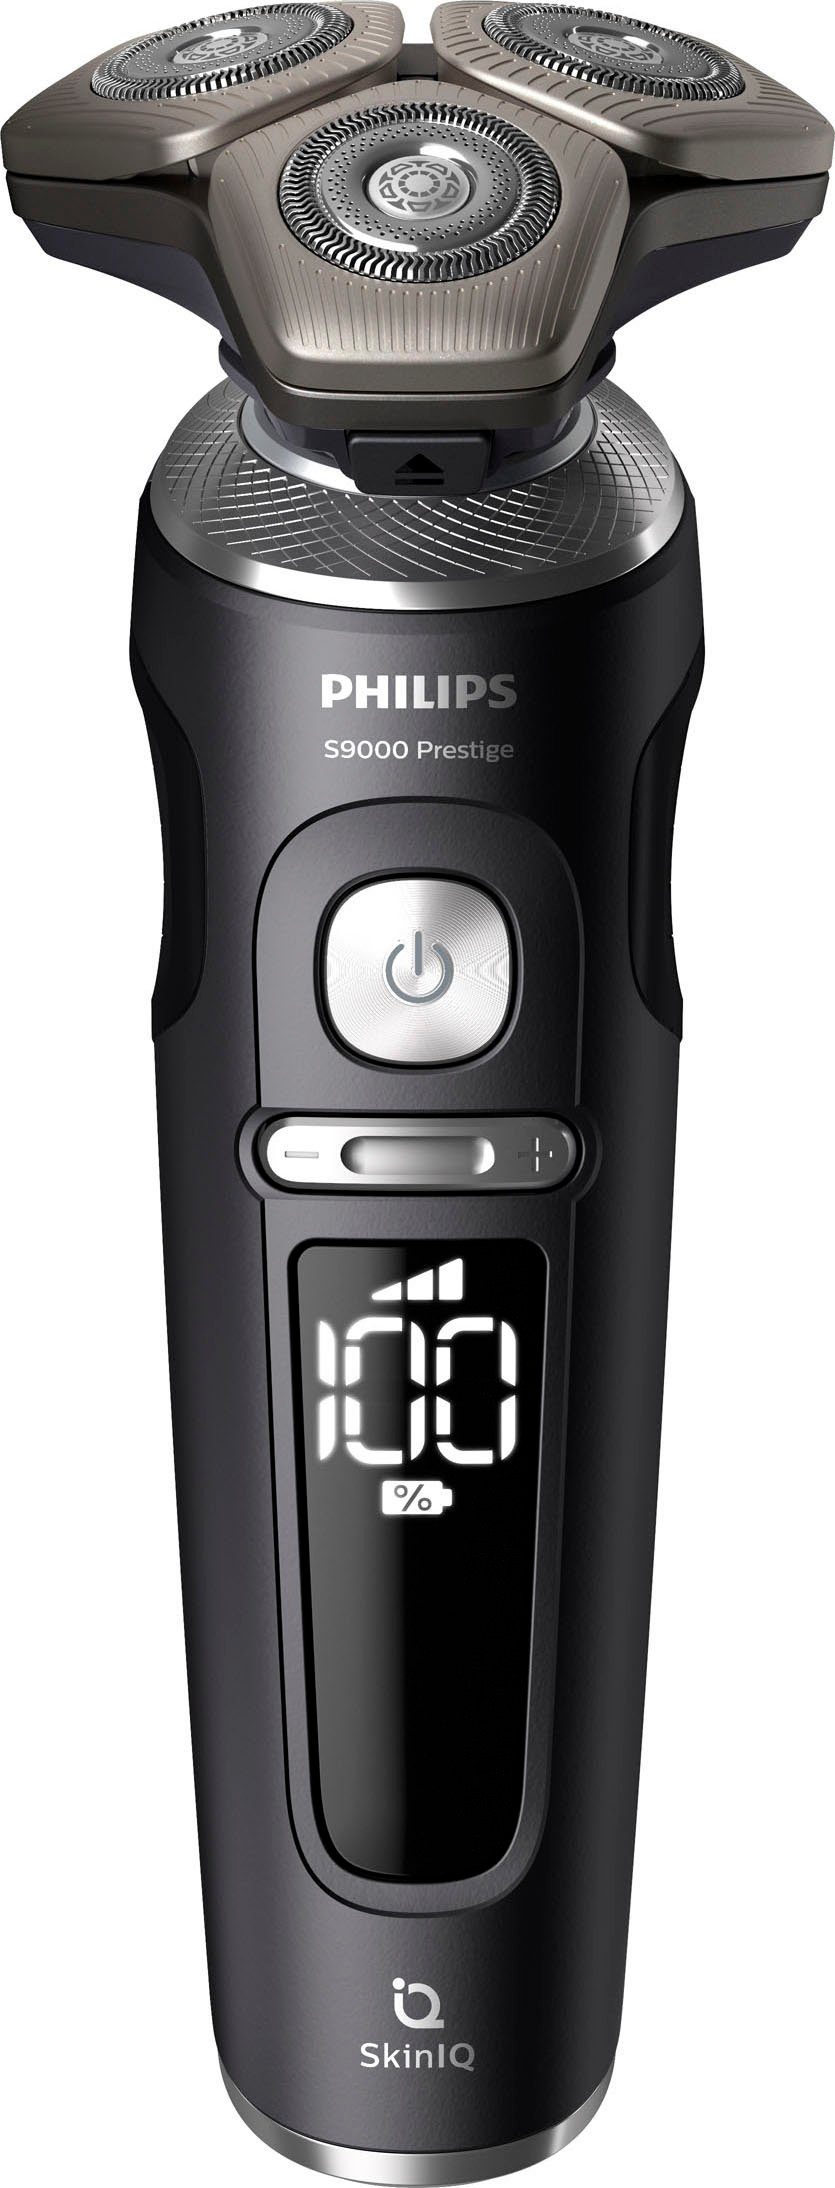 Philips Elektrorasierer Series 9000 Prestige Technologie 1, Aufsätze: mit SkinIQ SP9840/32, Reinigungsstation, Etui